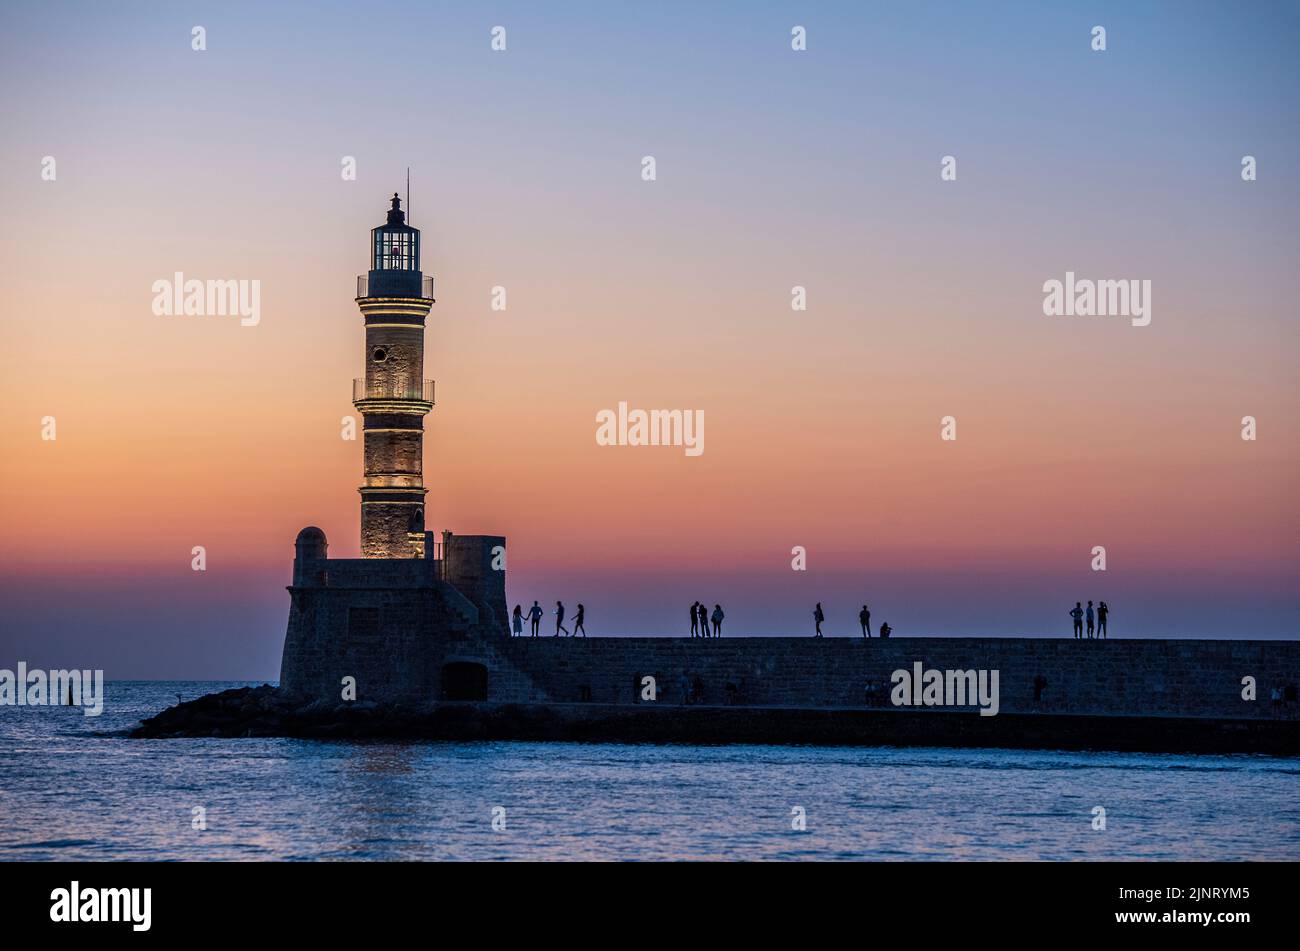 coucher de soleil sur le phare à l'entrée du port de chania sur l'île grecque de crète, magnifique coucher de soleil sur le phare historique de chania. Banque D'Images